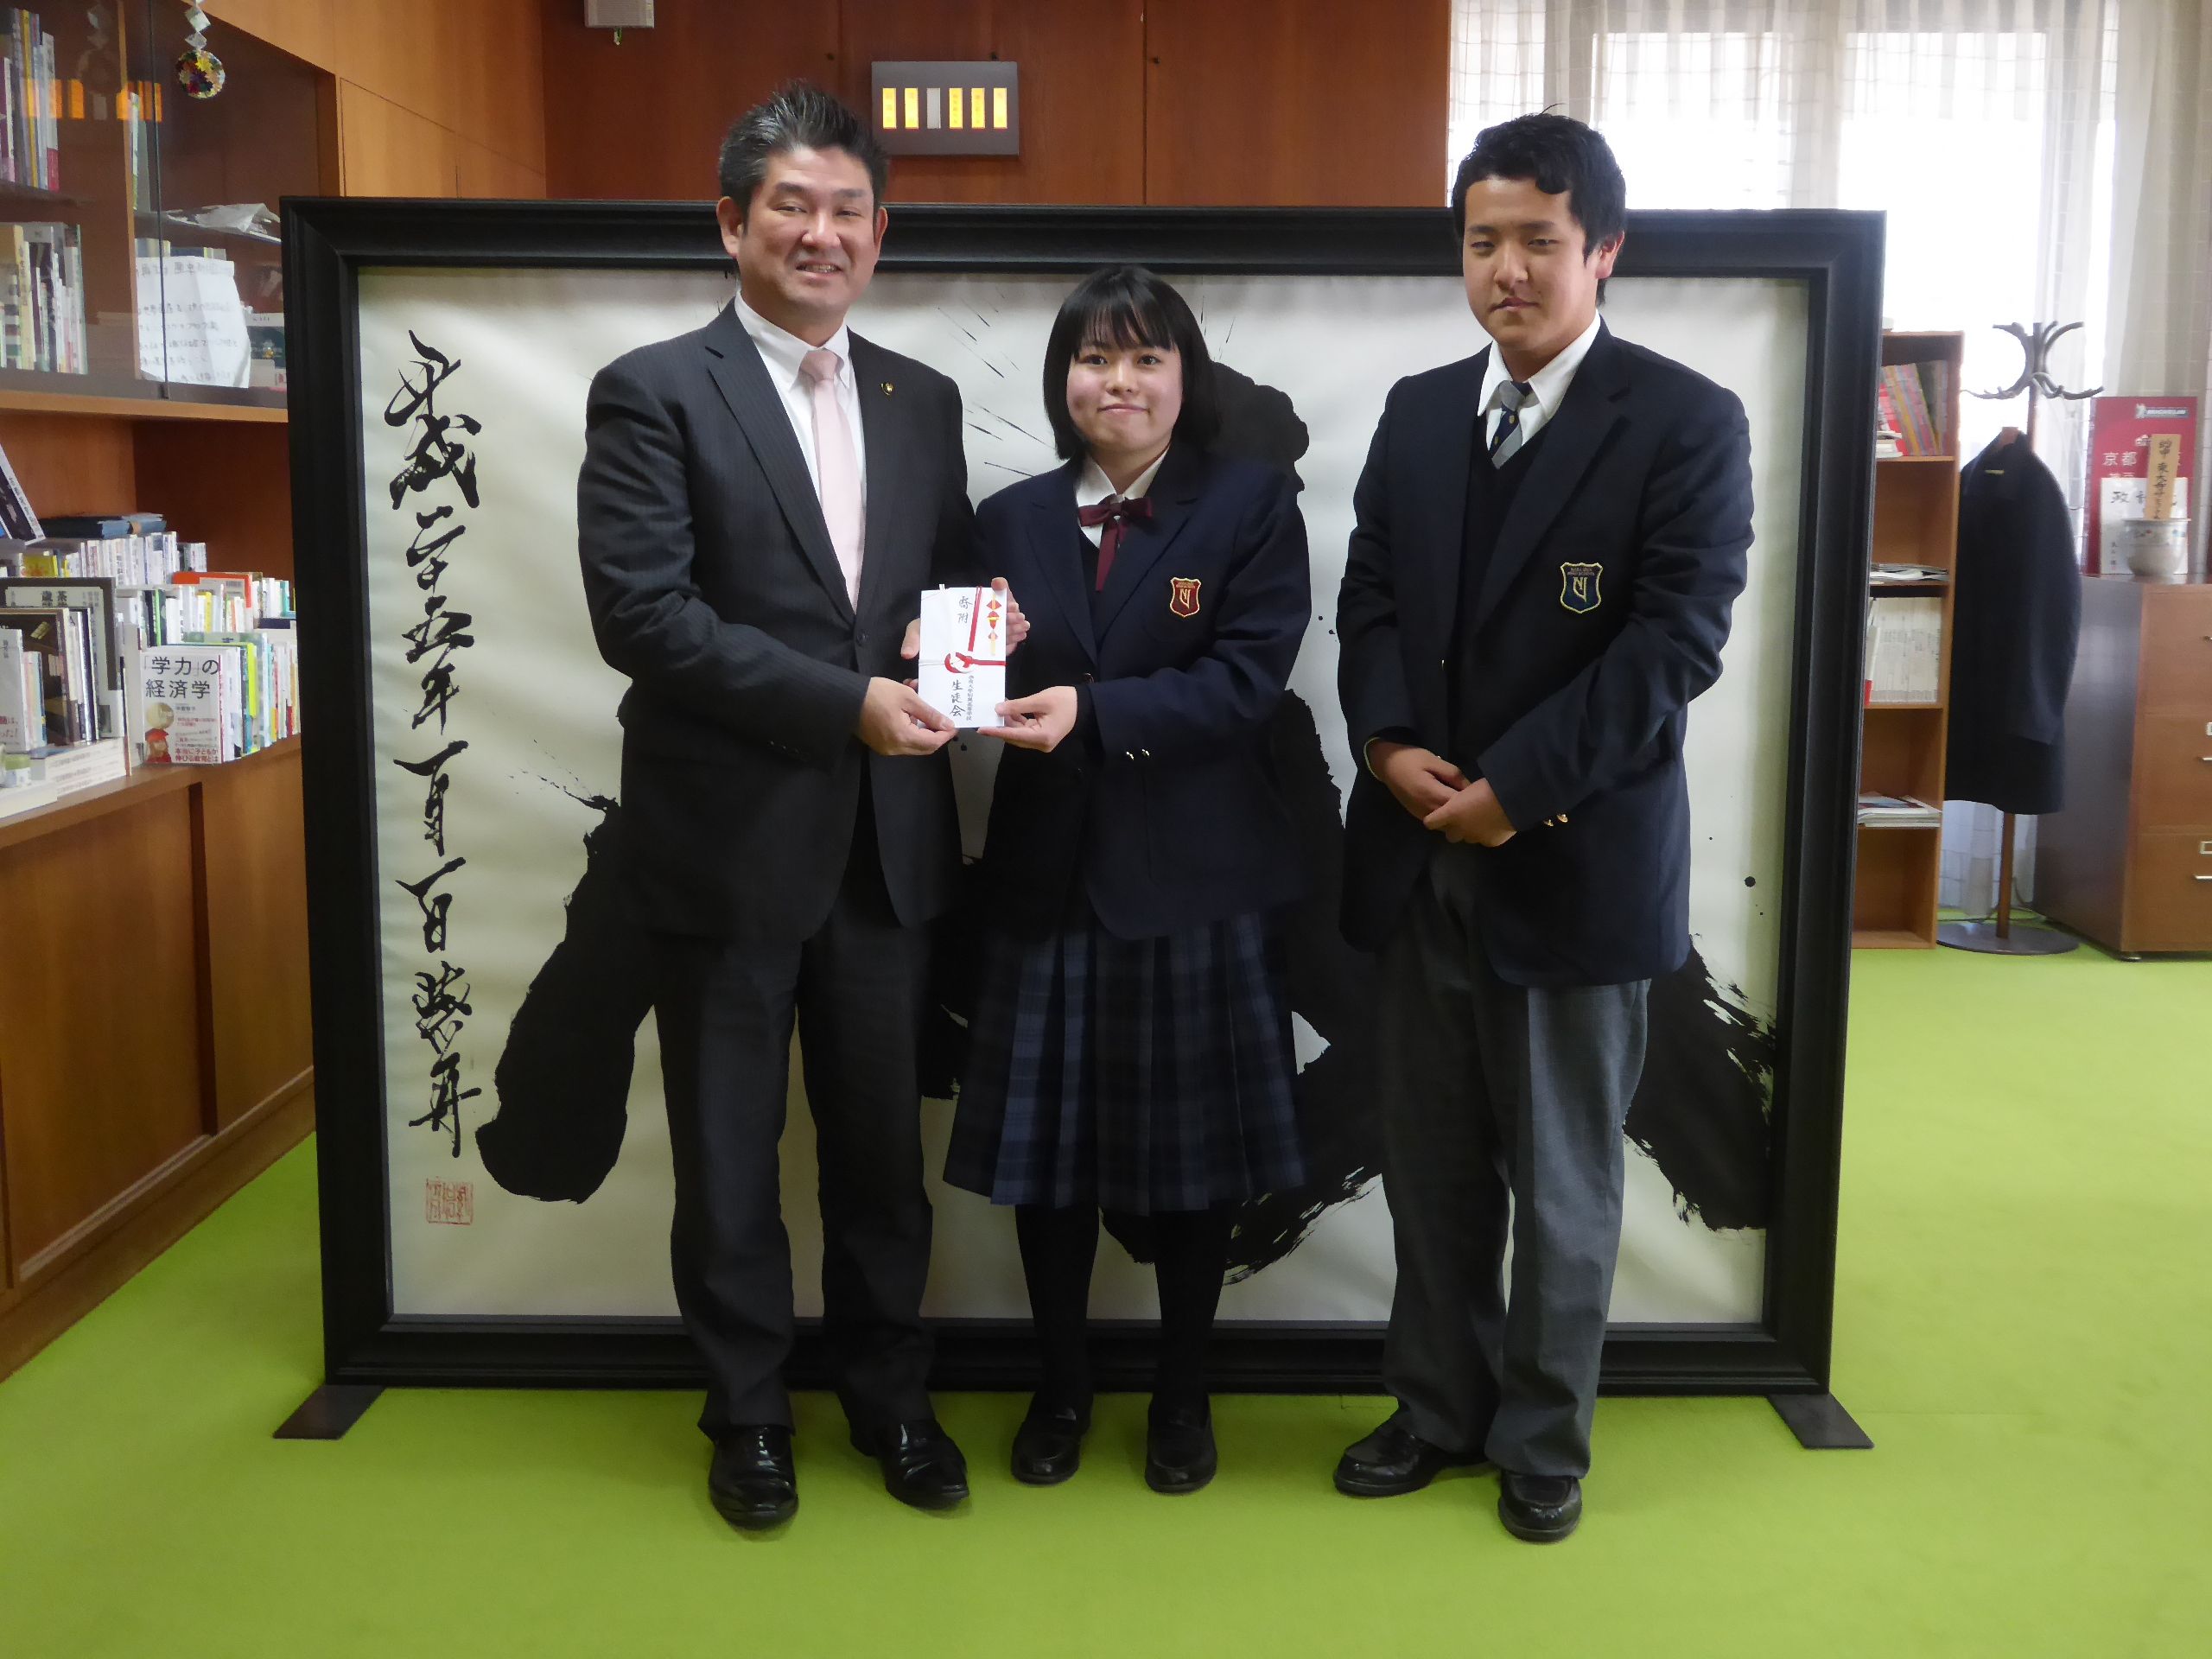 奈良大付属高校 バザー収益金寄付贈呈の画像